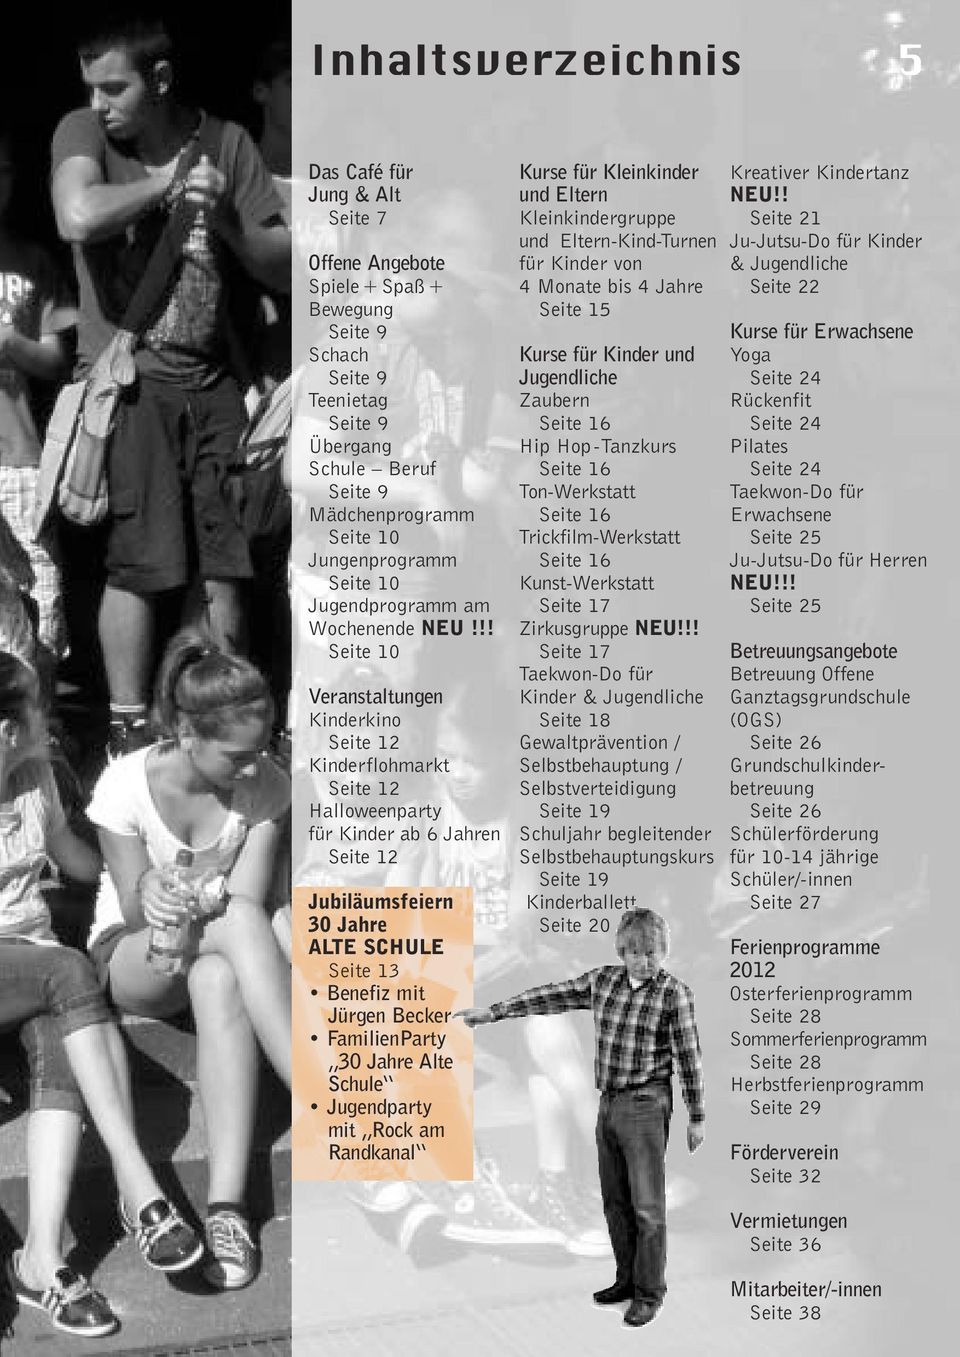 !! Seite 10 Veranstaltungen Kinderkino Seite 12 Kinderflohmarkt Seite 12 Halloweenparty für Kinder ab 6 Jahren Seite 12 Jubiläumsfeiern 30 Jahre ALTE SCHULE Seite 13 Benefiz mit Jürgen Becker